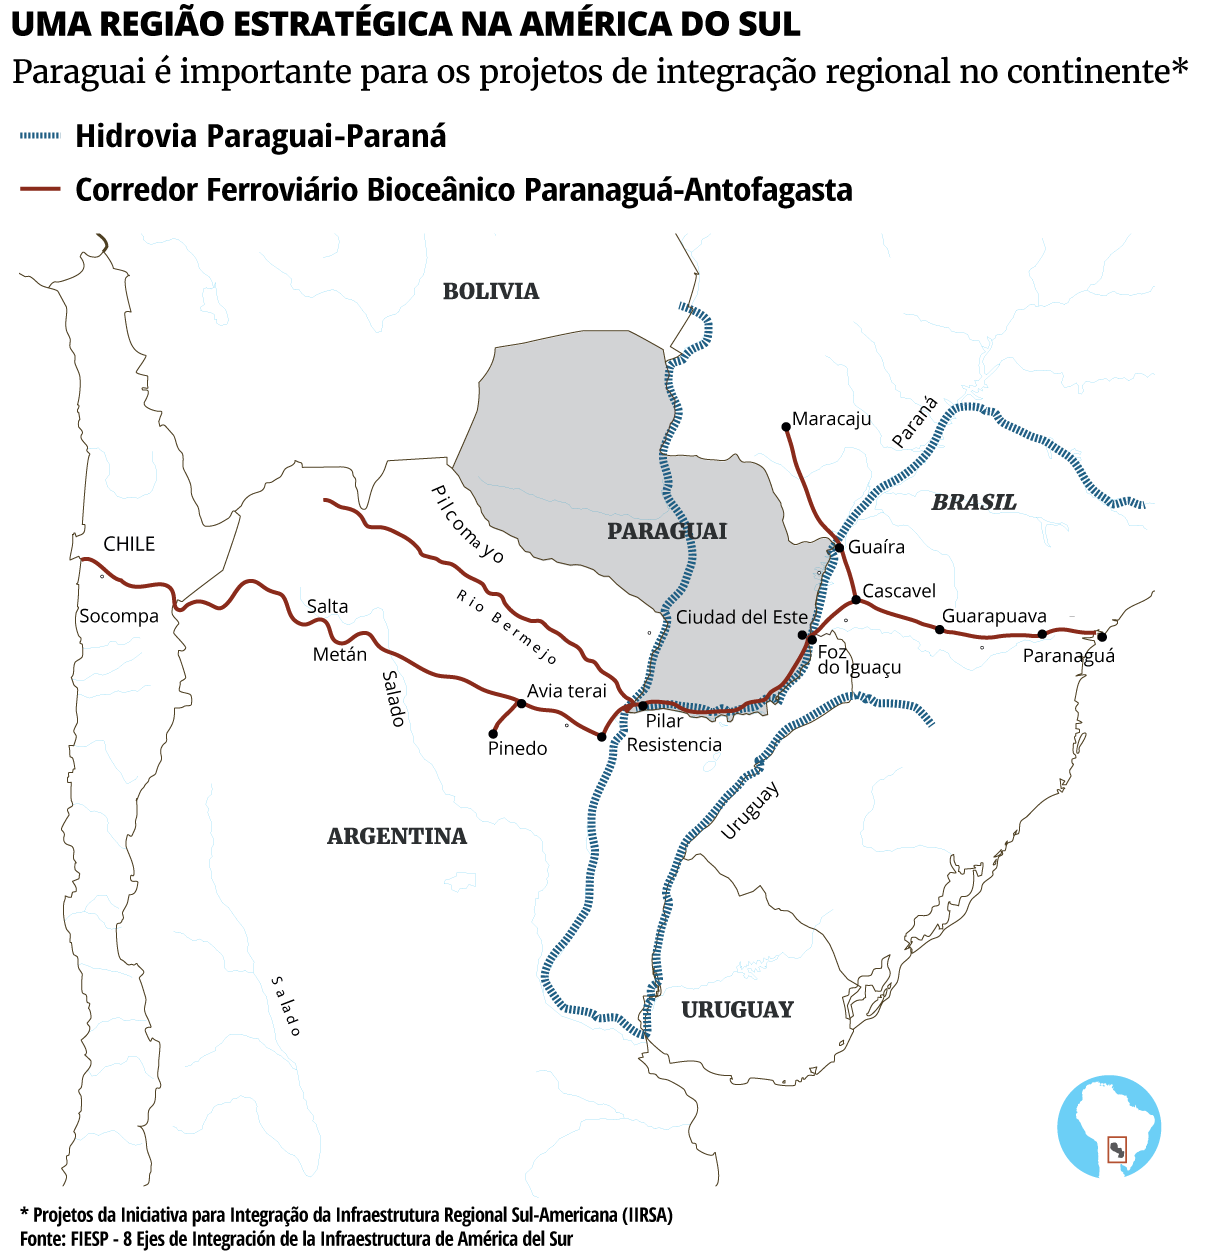 Paraguai é importante para os projetos de integração regional no continente